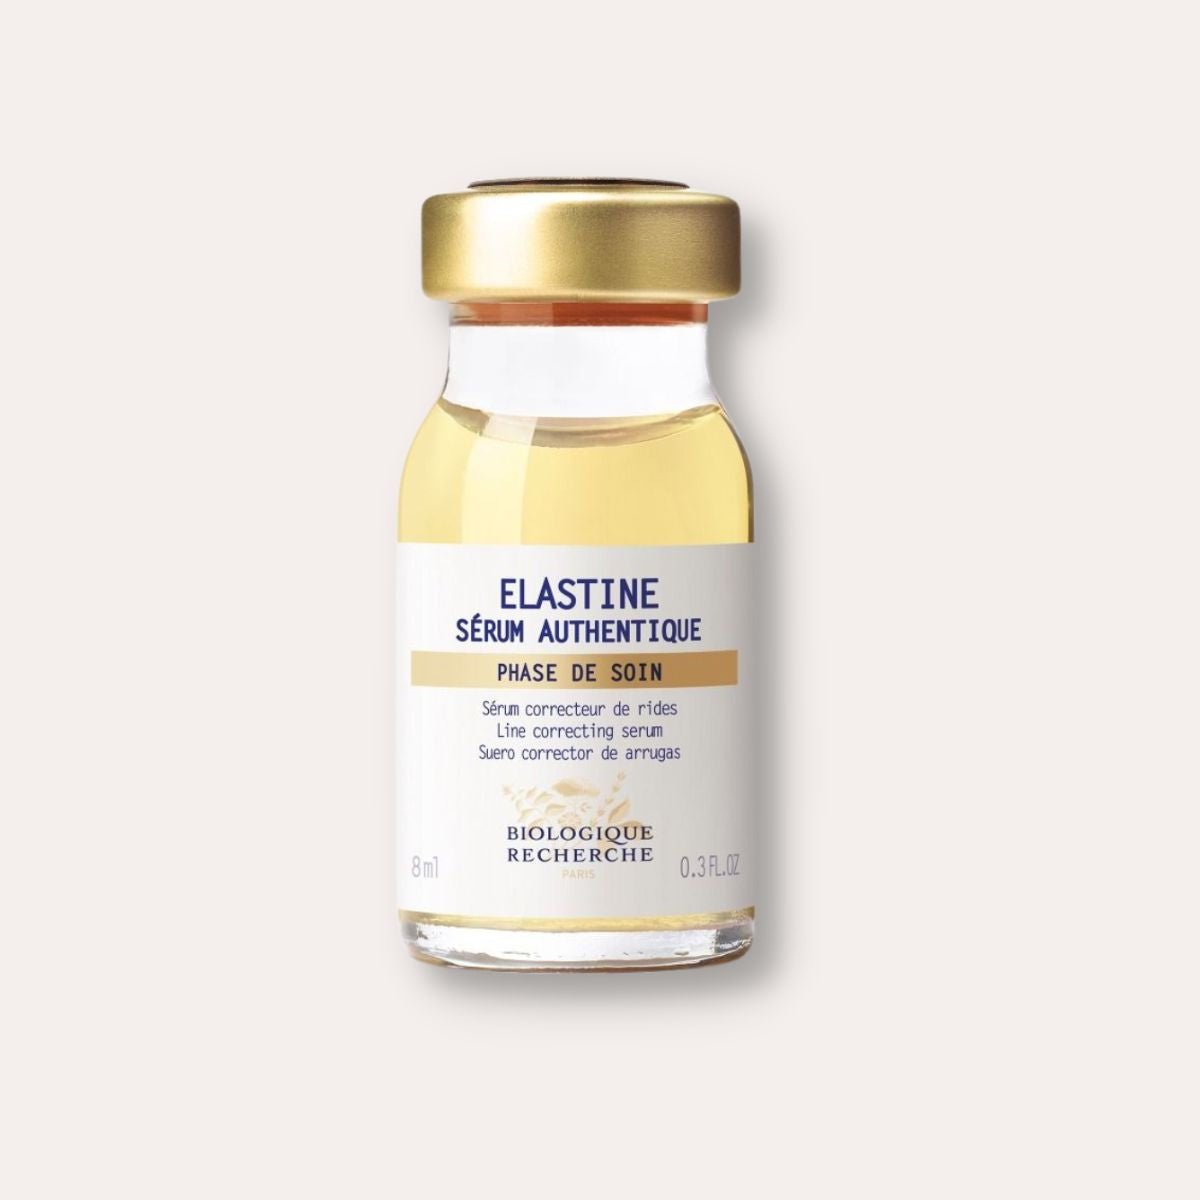 Serum Elastine - Sara Lorentsen Skin Expert